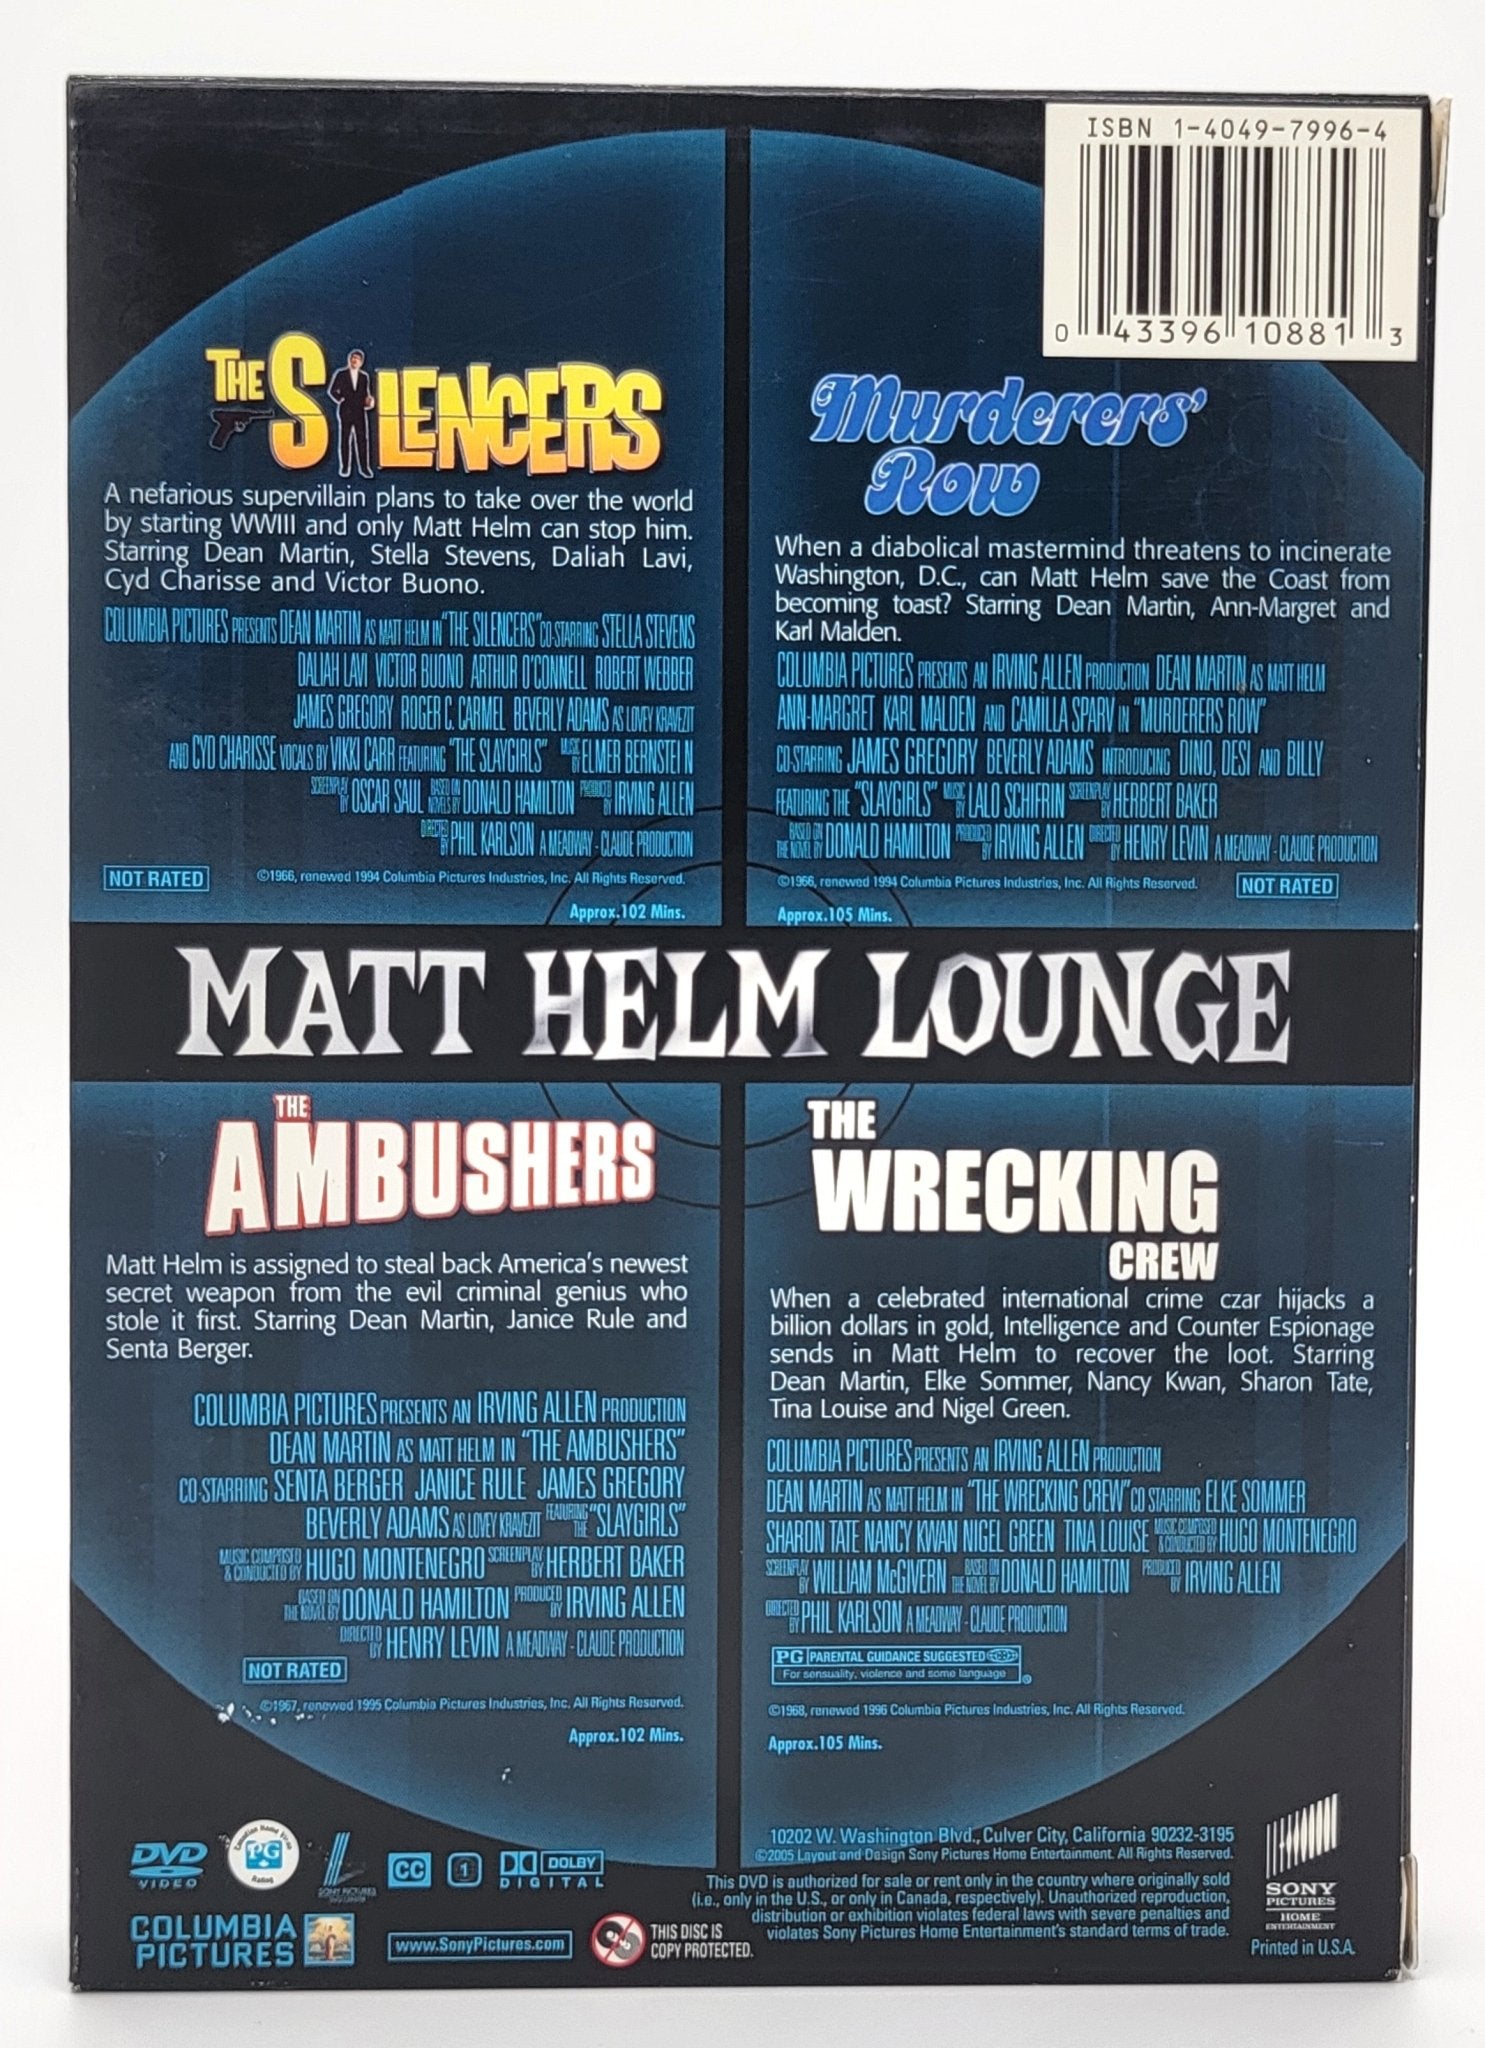 Sony Pictures Home Entertainment - Matt Helm Lounge -Dean Martin is Matt Helm | DVD | 4 Movies - 4 Disc Set - DVD - Steady Bunny Shop